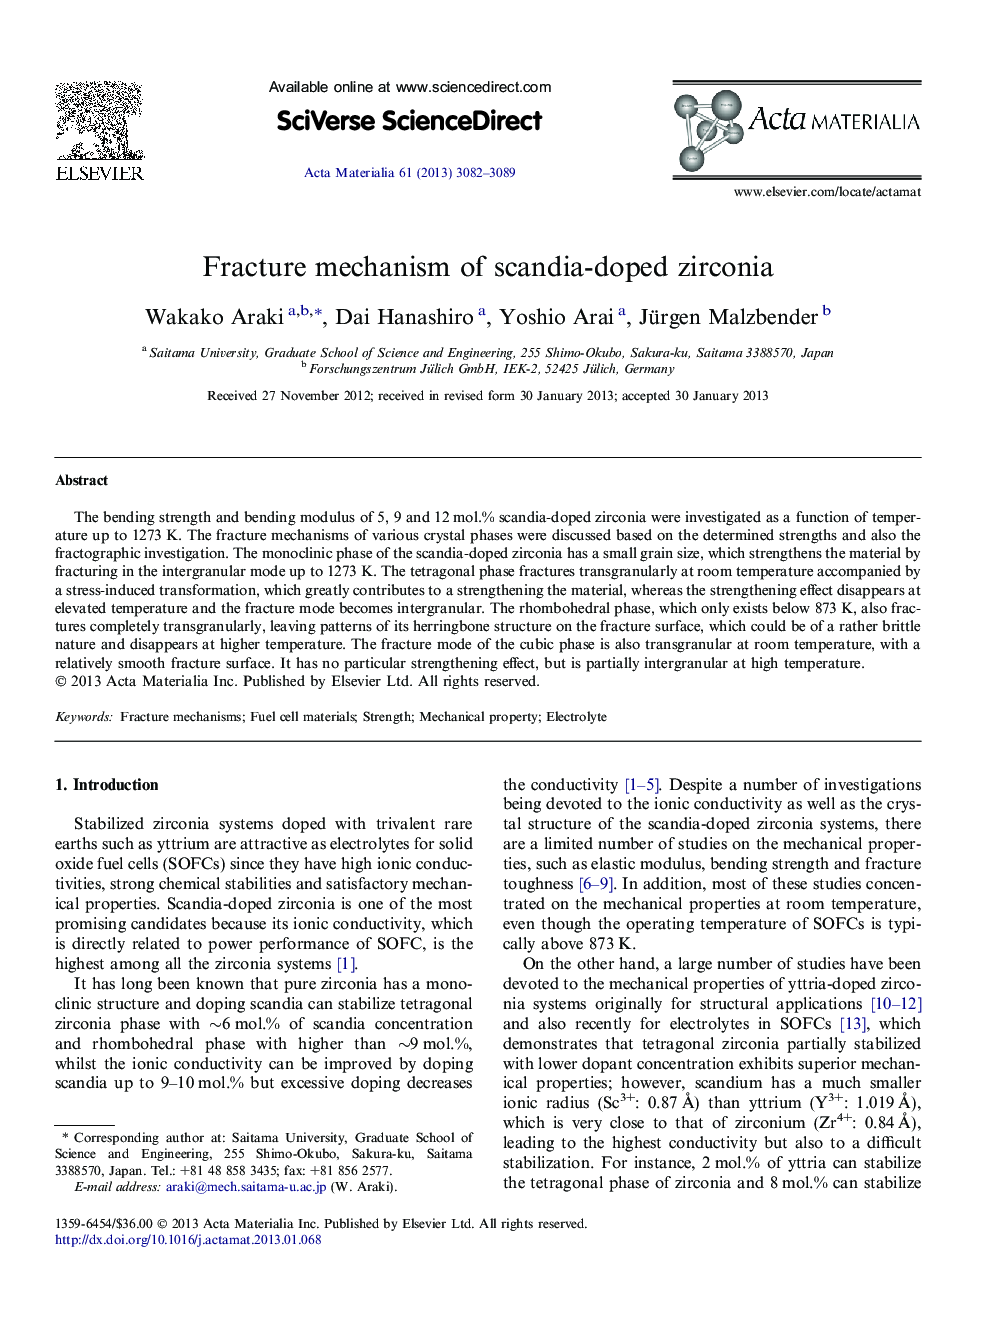 Fracture mechanism of scandia-doped zirconia